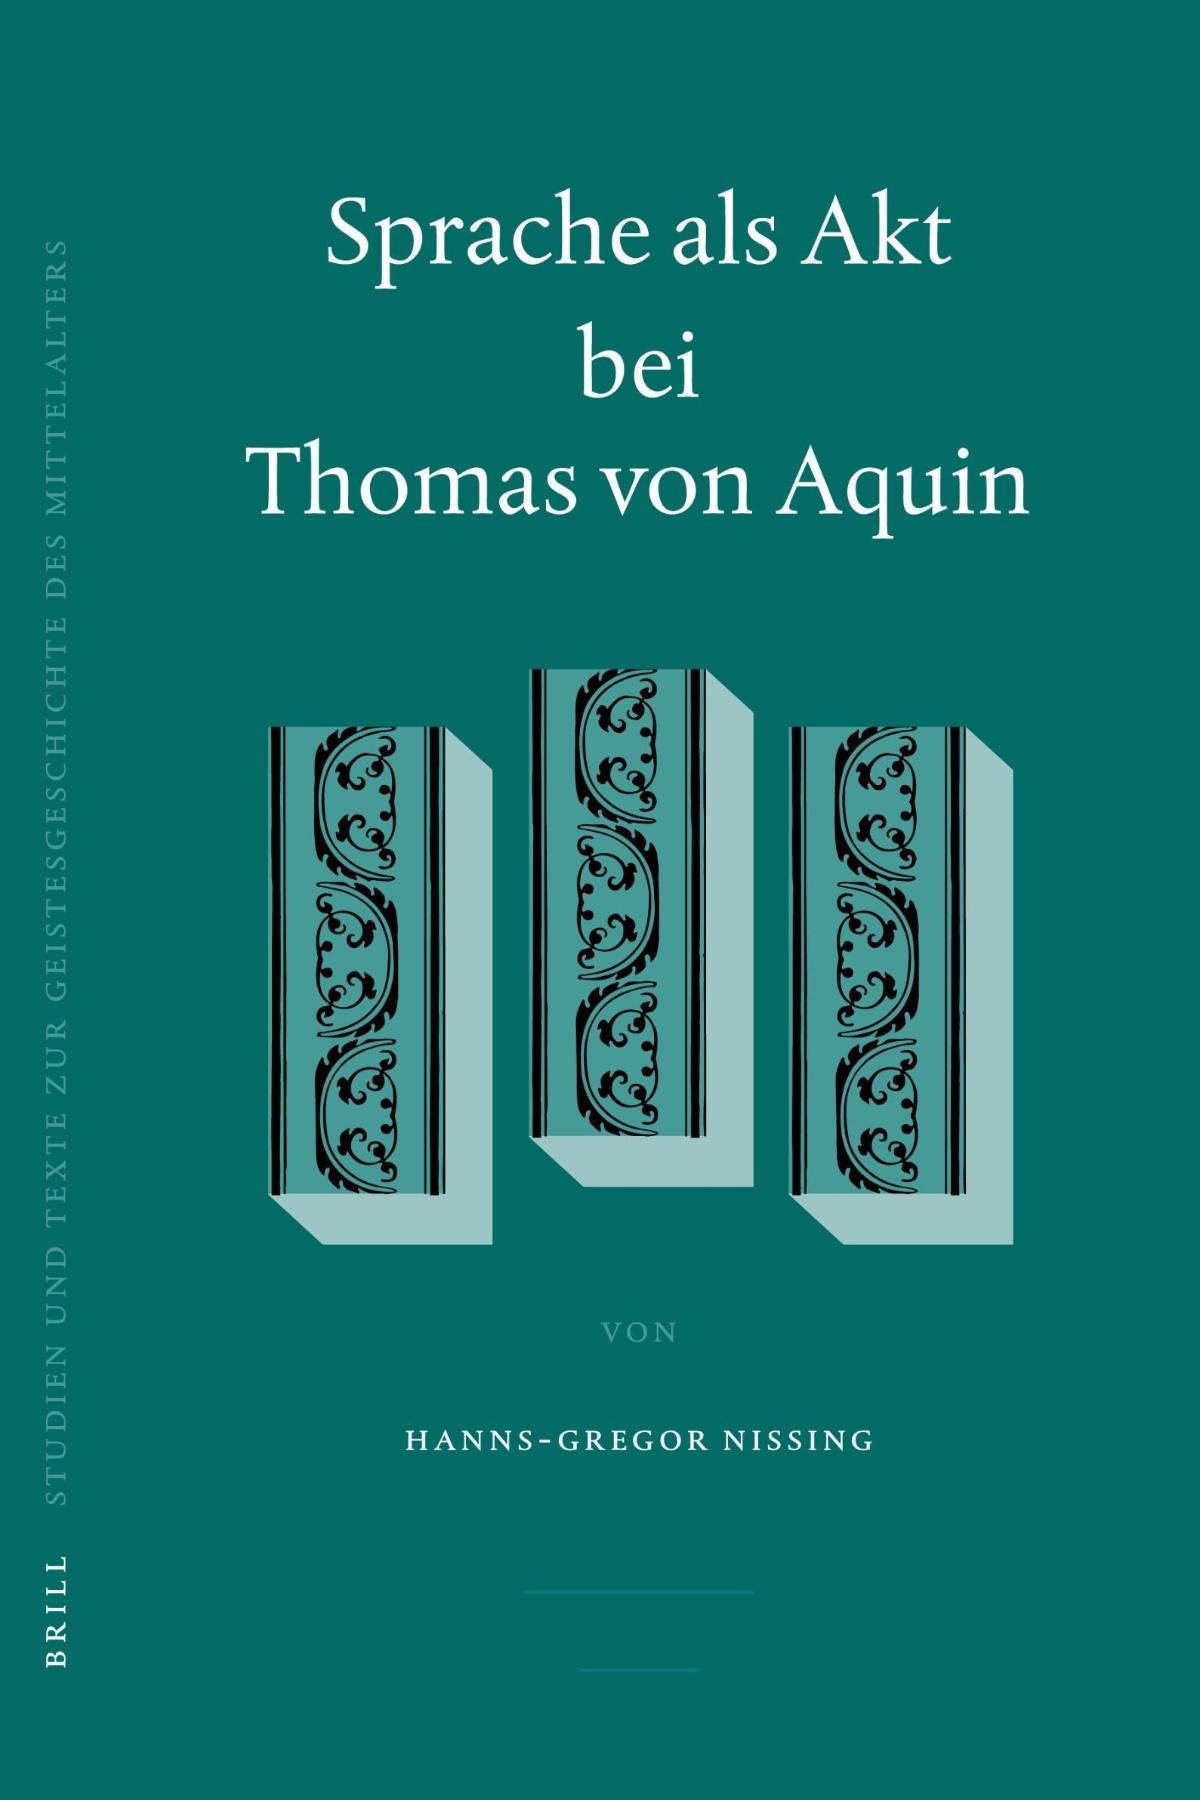 Nissing - Sprache als Akt bei Thomas von Aquin